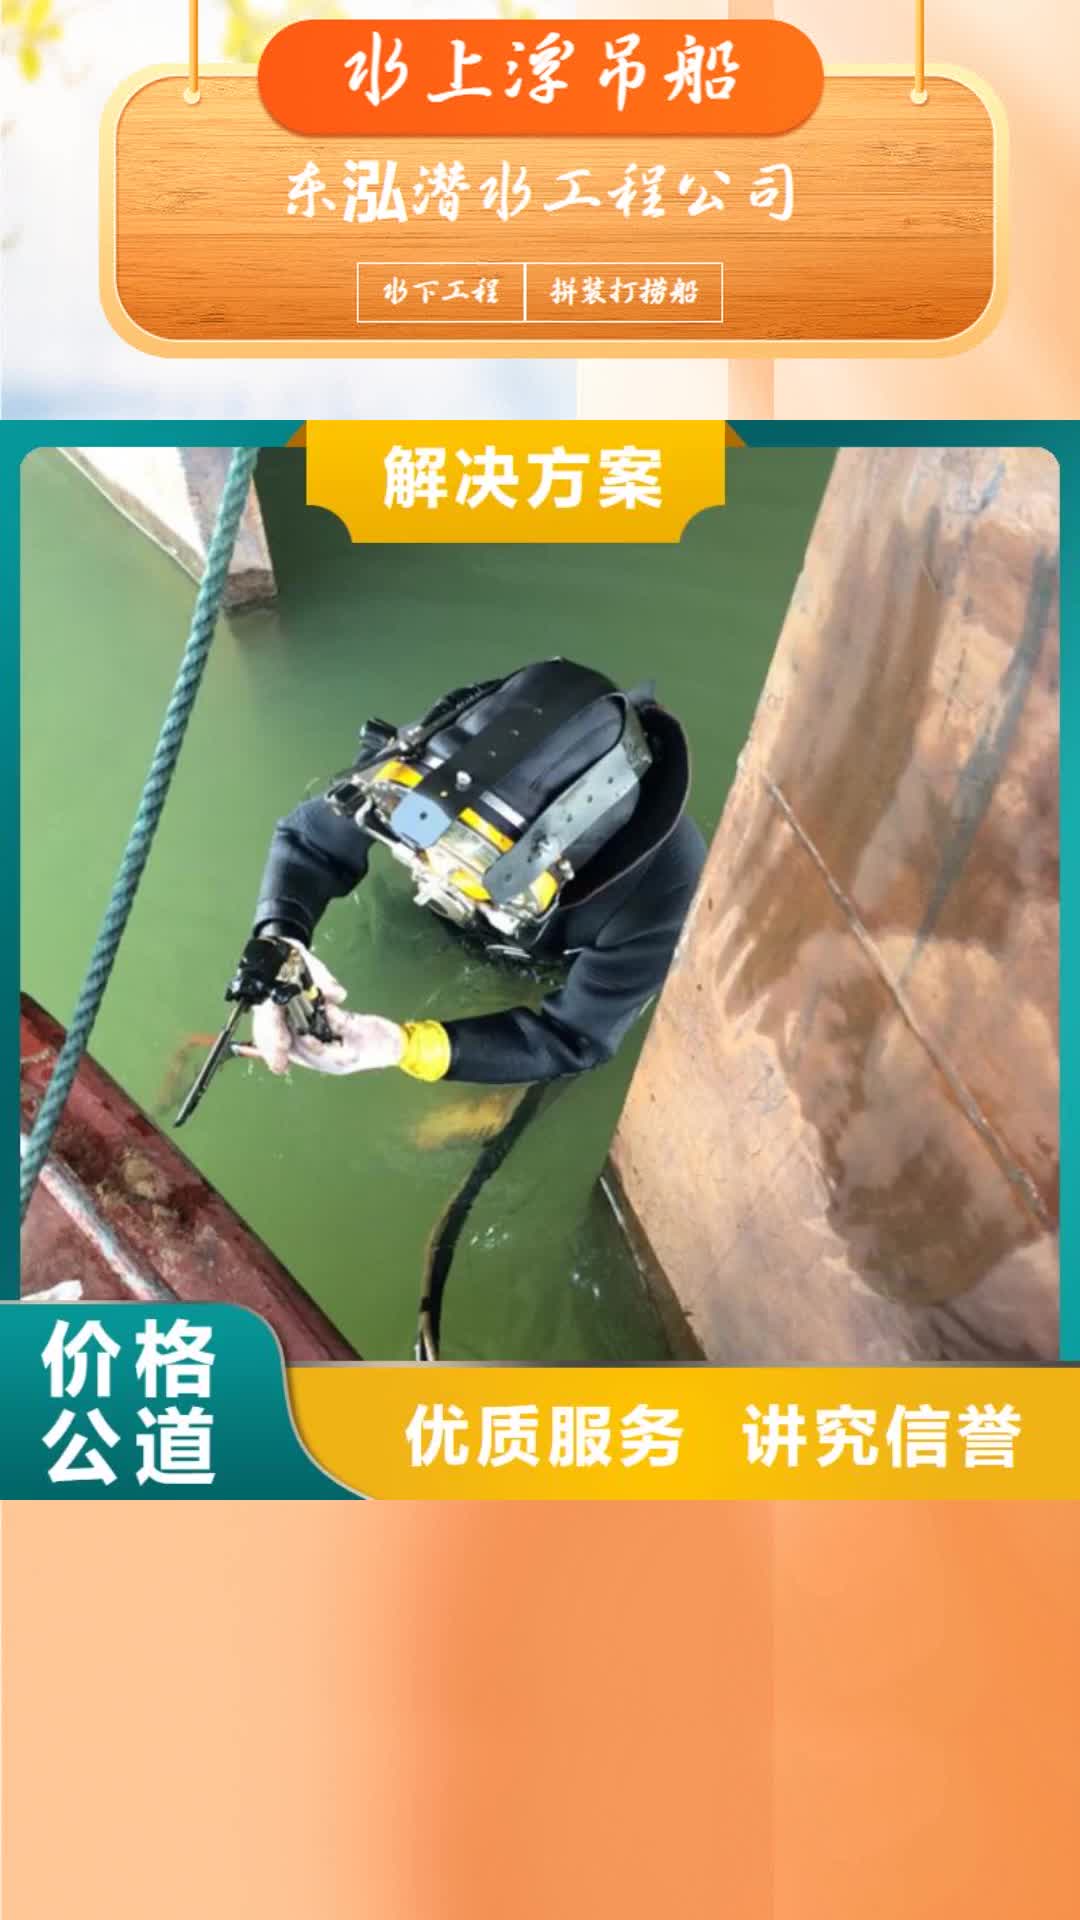 【普洱 水上浮吊船,潜水作业施工专业团队】